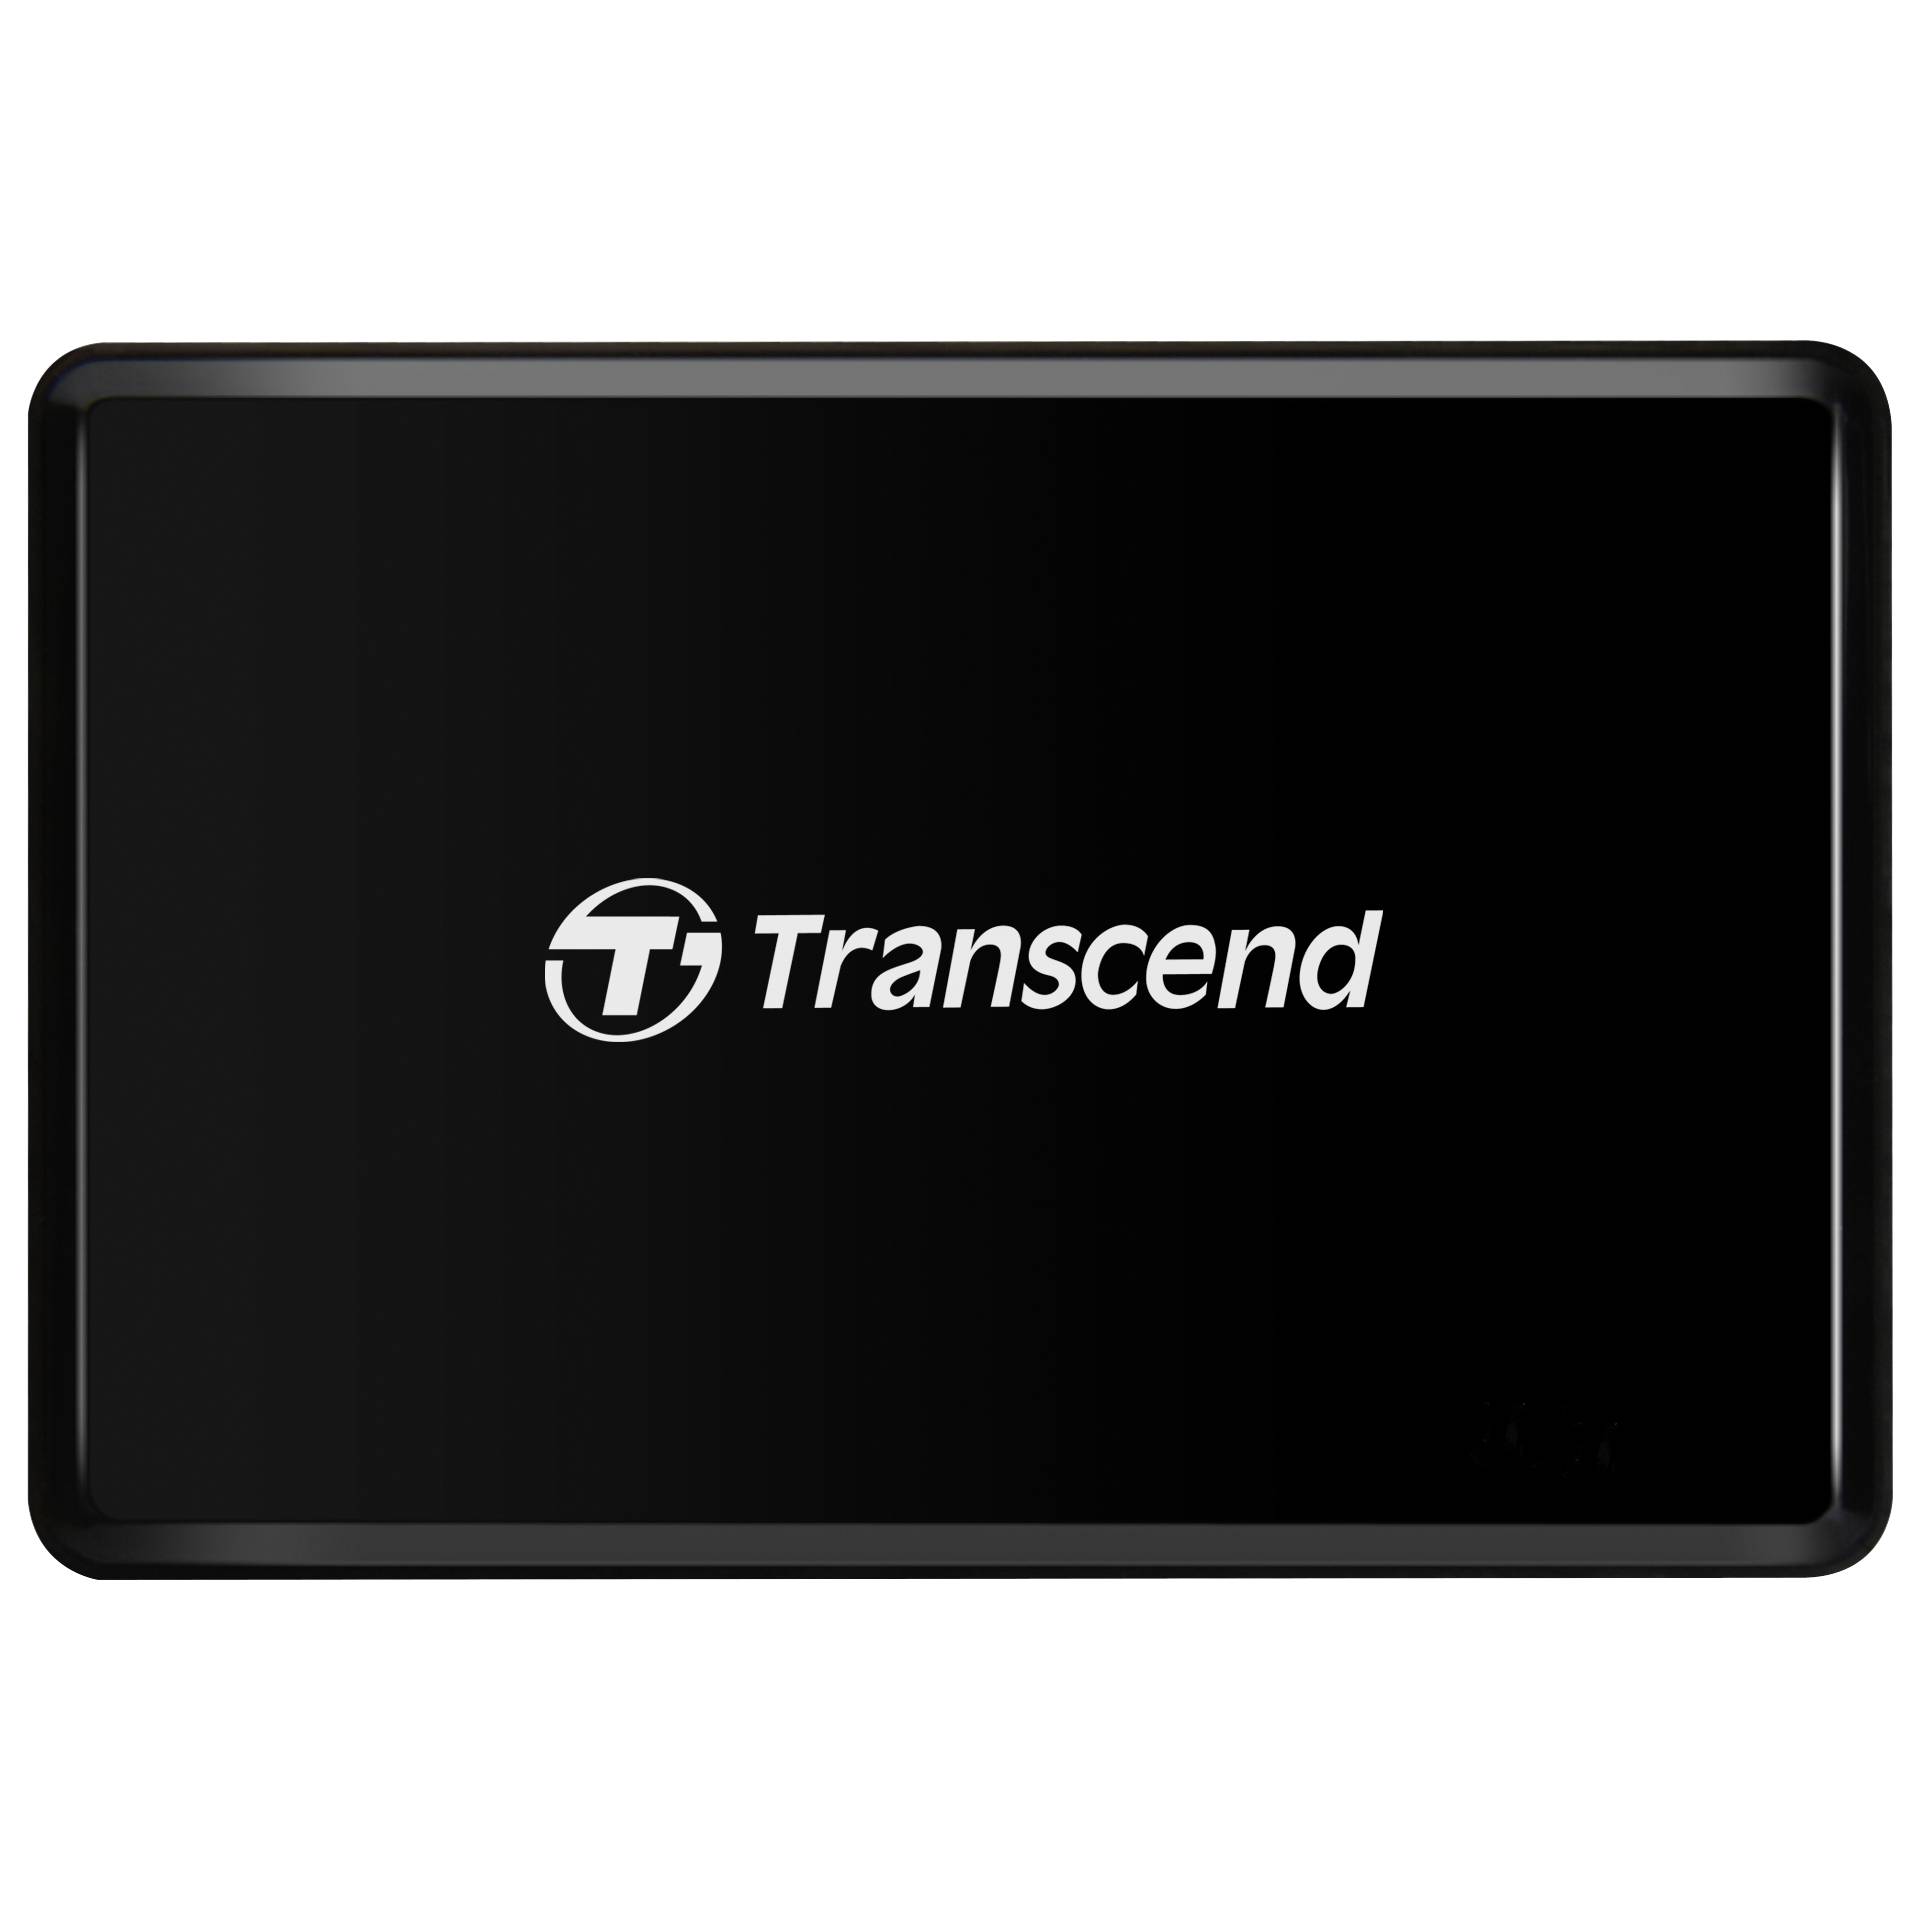 Transcend Card Reader RDF2 USB 3.1 Gen 1